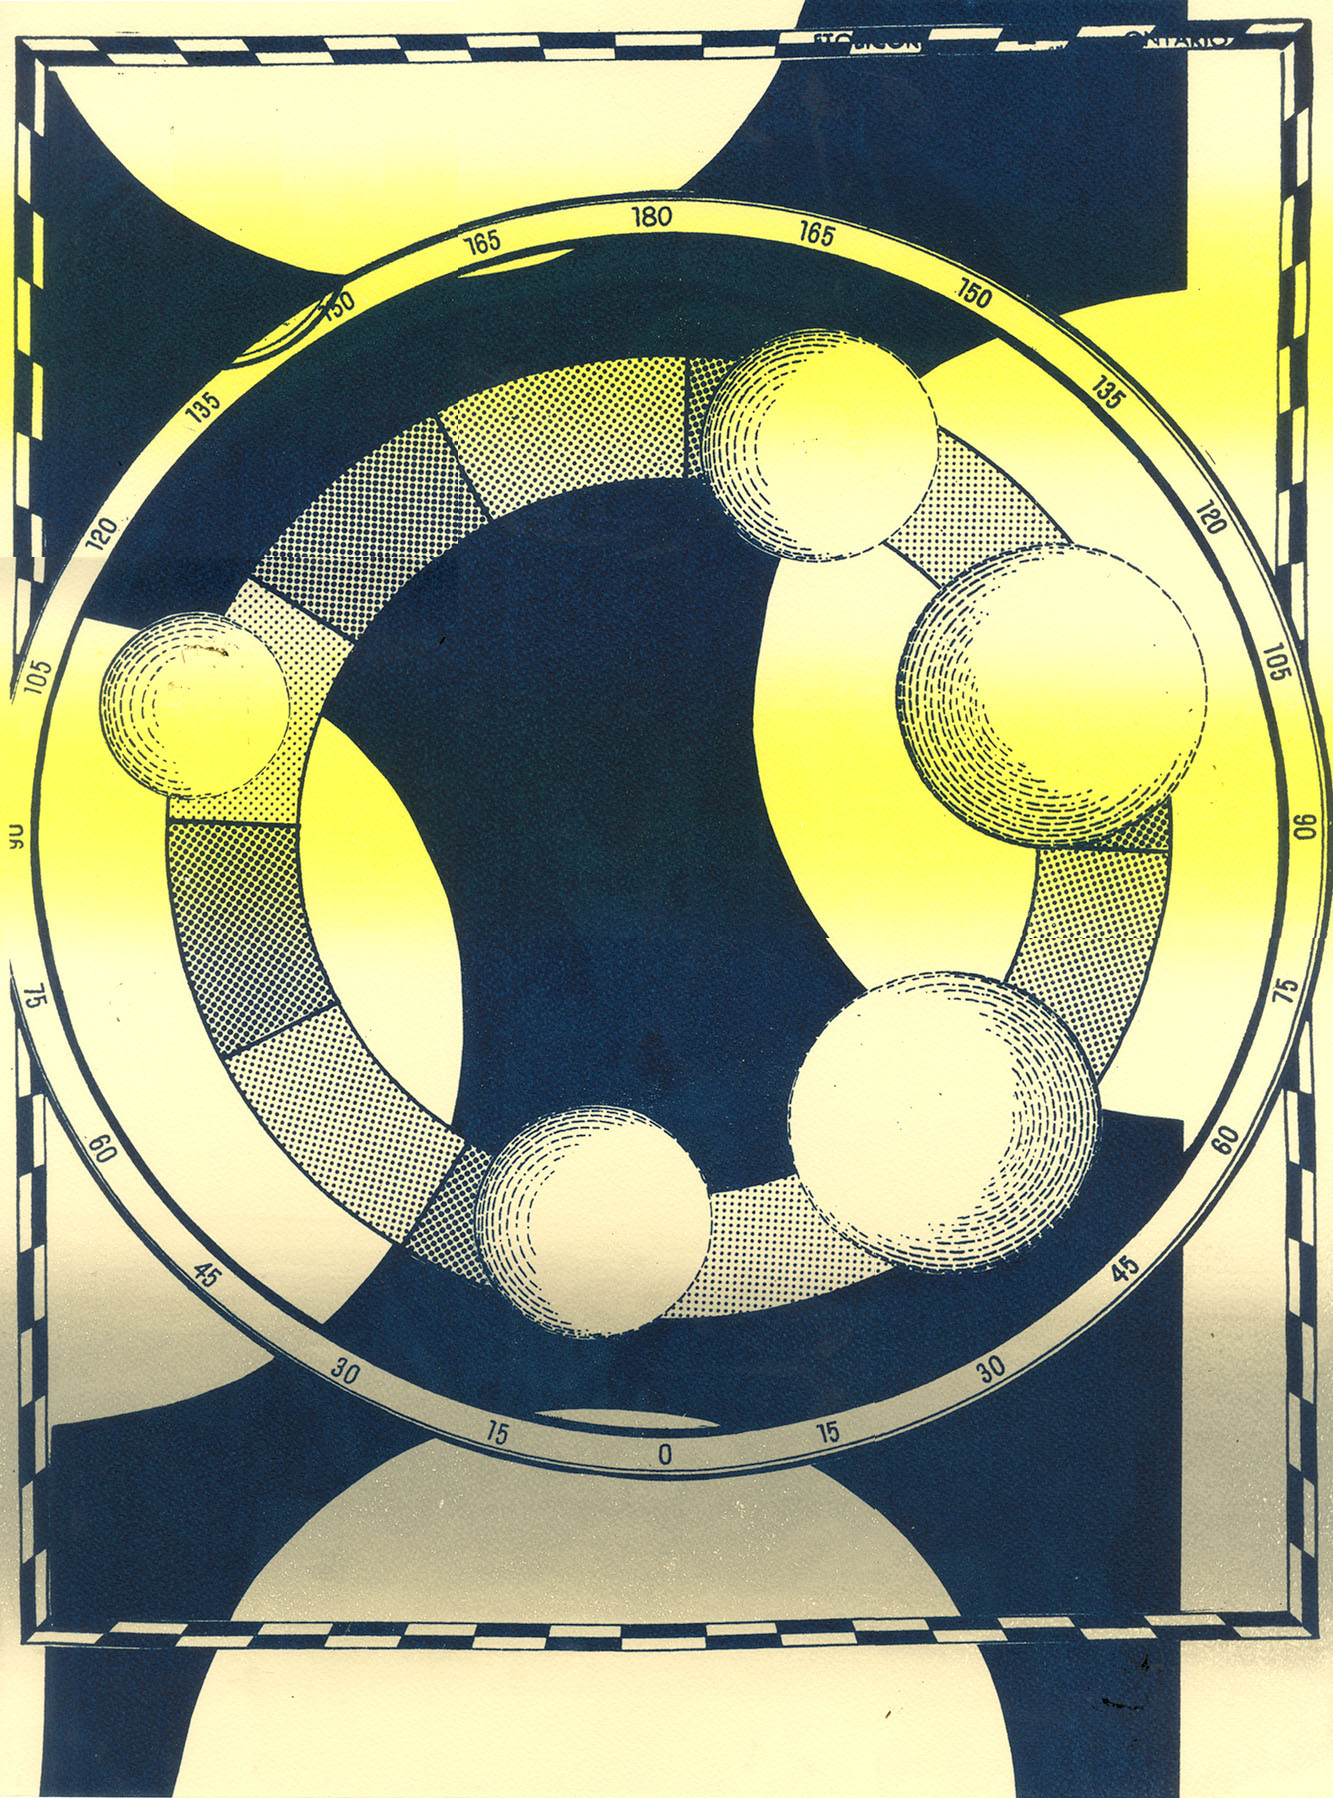  Wheel of Fortuna  Screenprint  18" x 24"  2013 